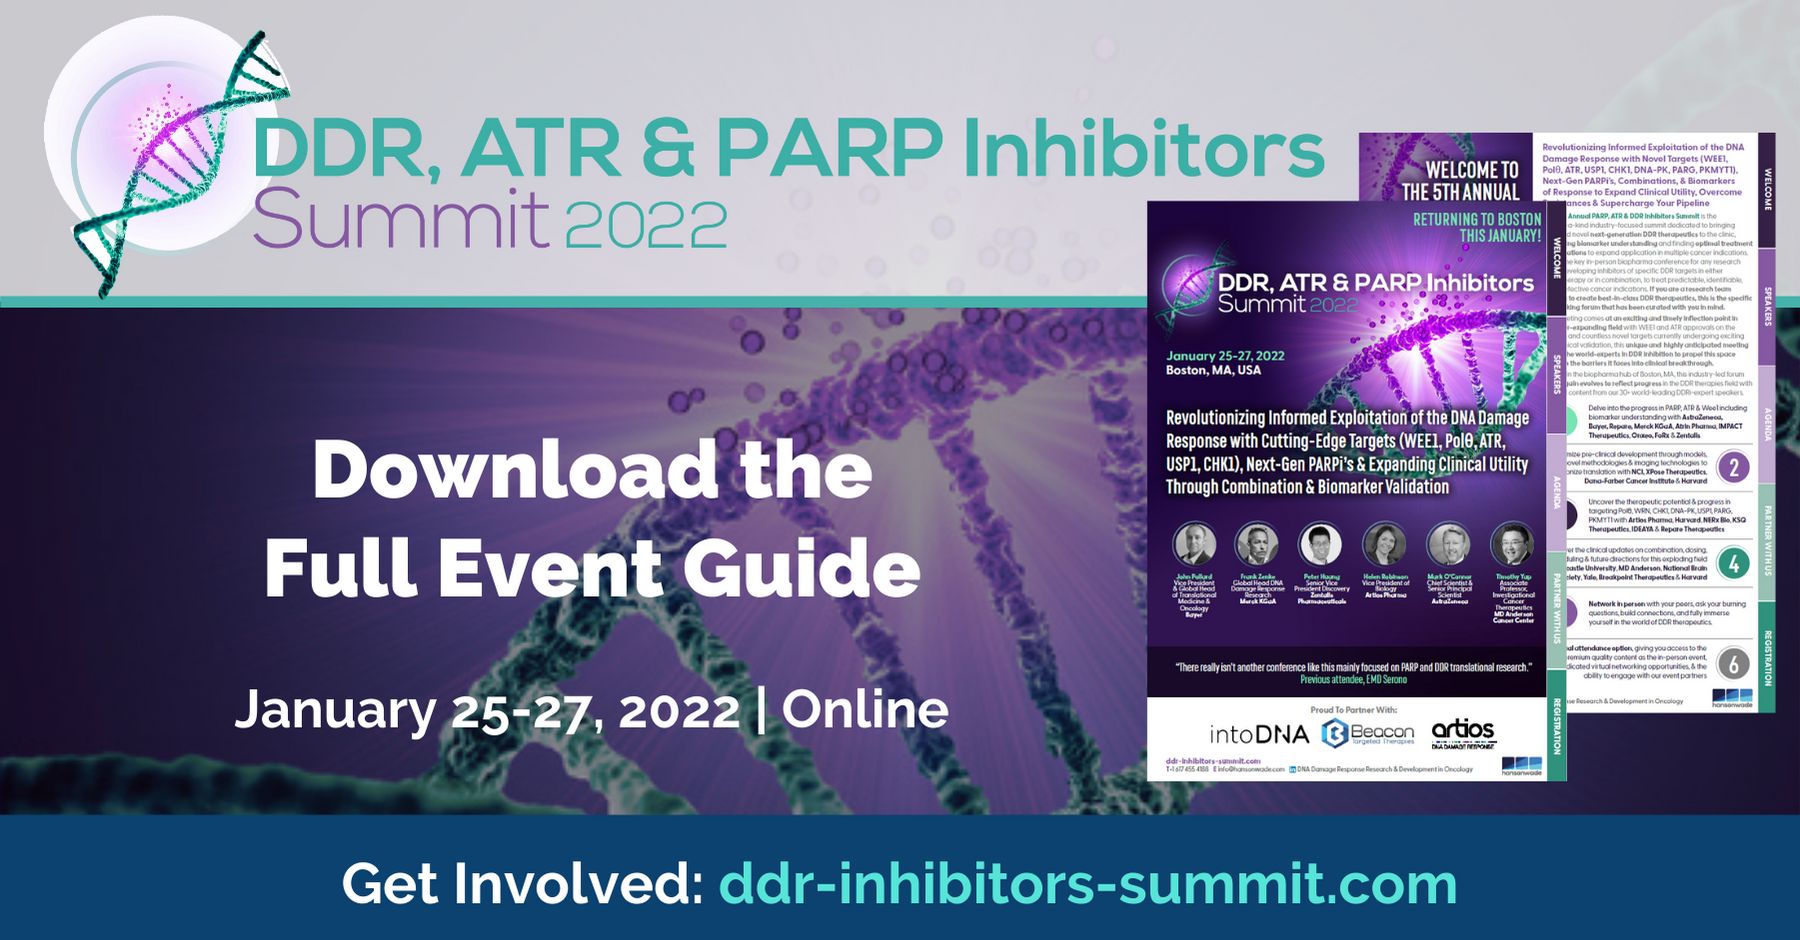 Digital DDR, ATR & PARP Inhibitors Summit 2022